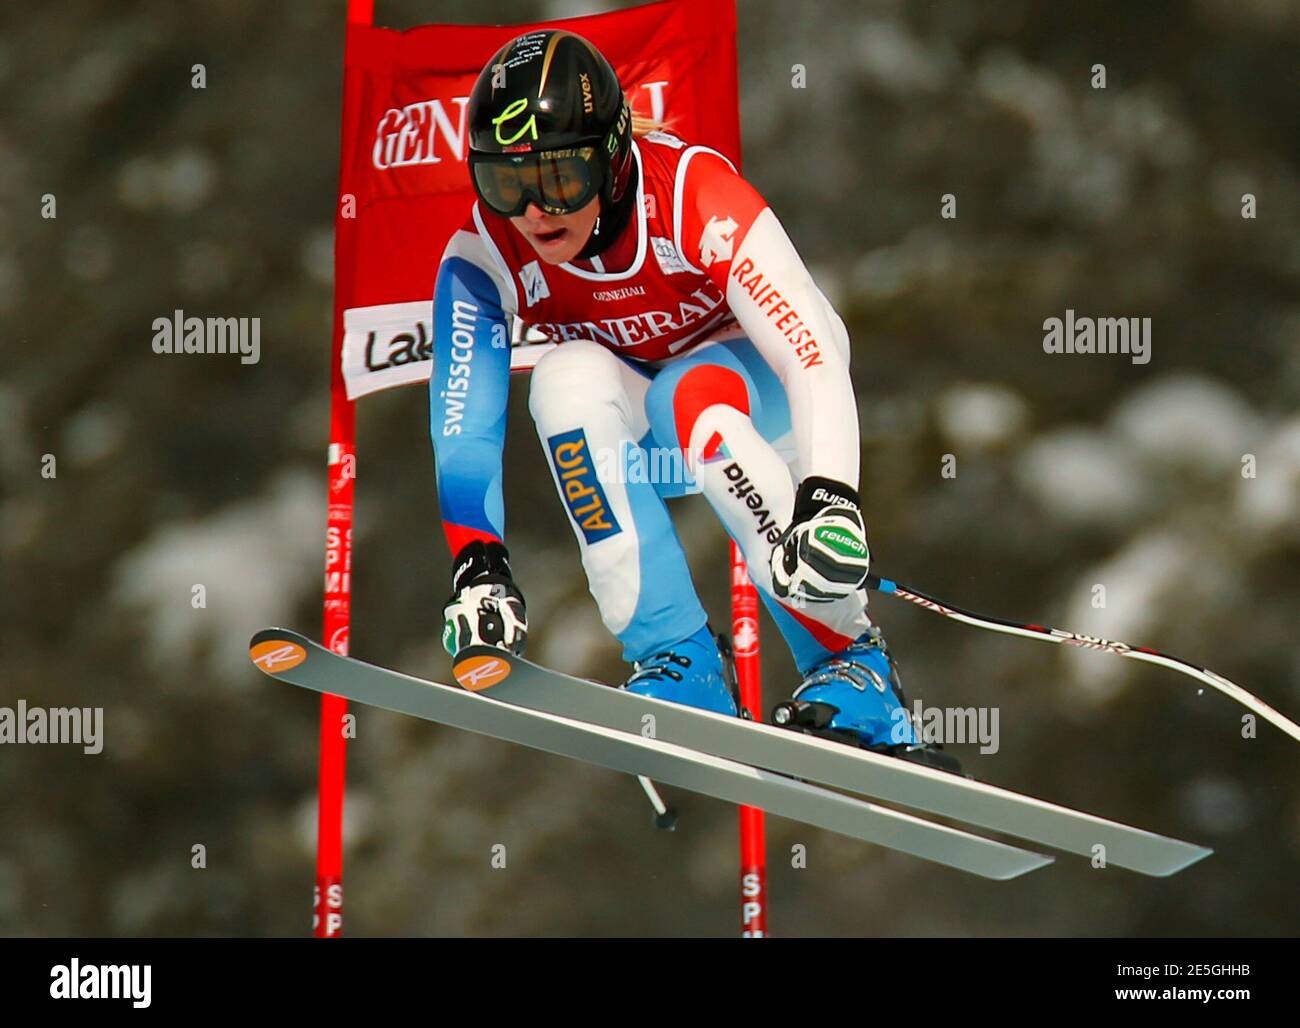 Lara Gut della Svizzera prende il volo durante gli allenamenti di sci alpino per la Coppa del mondo delle Donne Downhill nel Lago Louise, Alberta, 27 novembre 2012. REUTERS/Mike Blake (CANADA - Tags: SCI SPORTIVO) Foto Stock